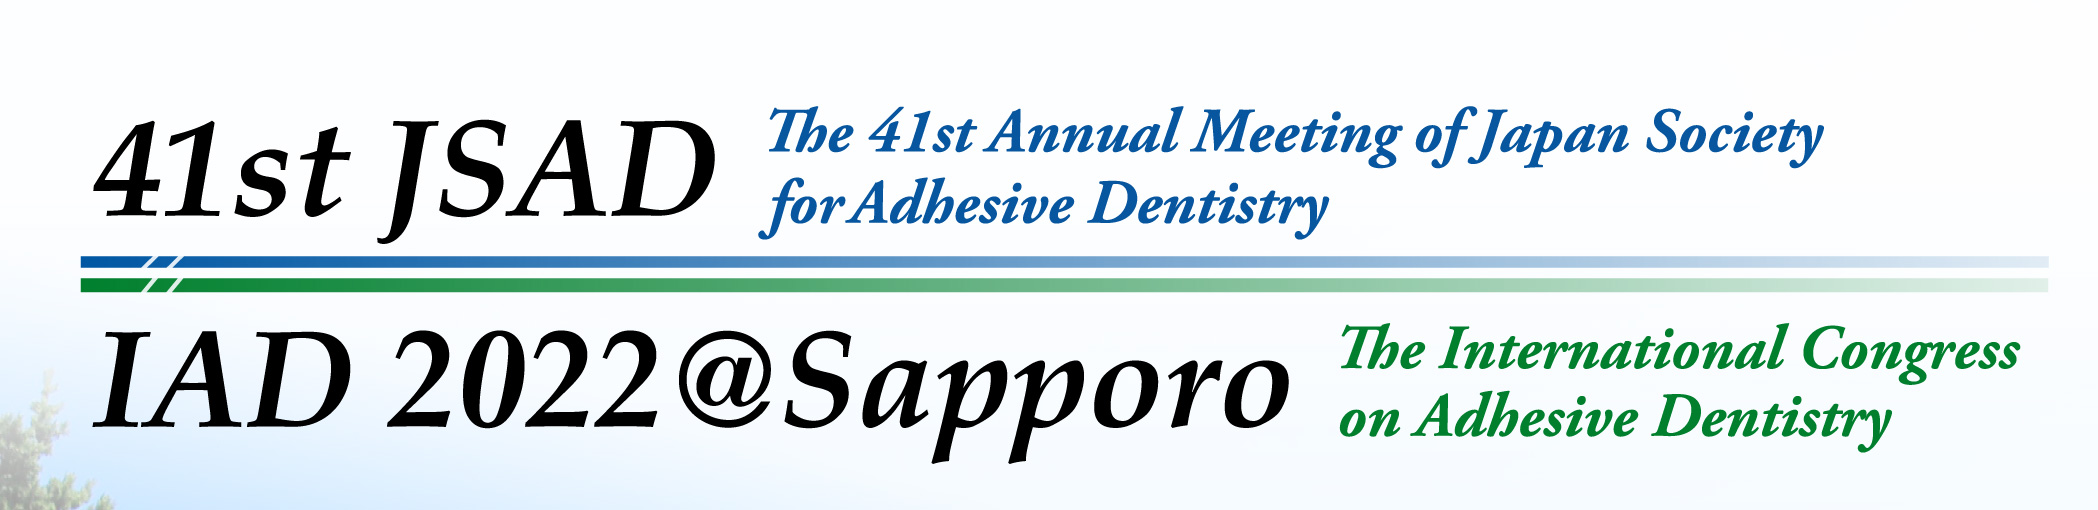 第41回日本接着歯学会学術大会（国際接着歯学会（IAD2022@Sapporo）との併催）